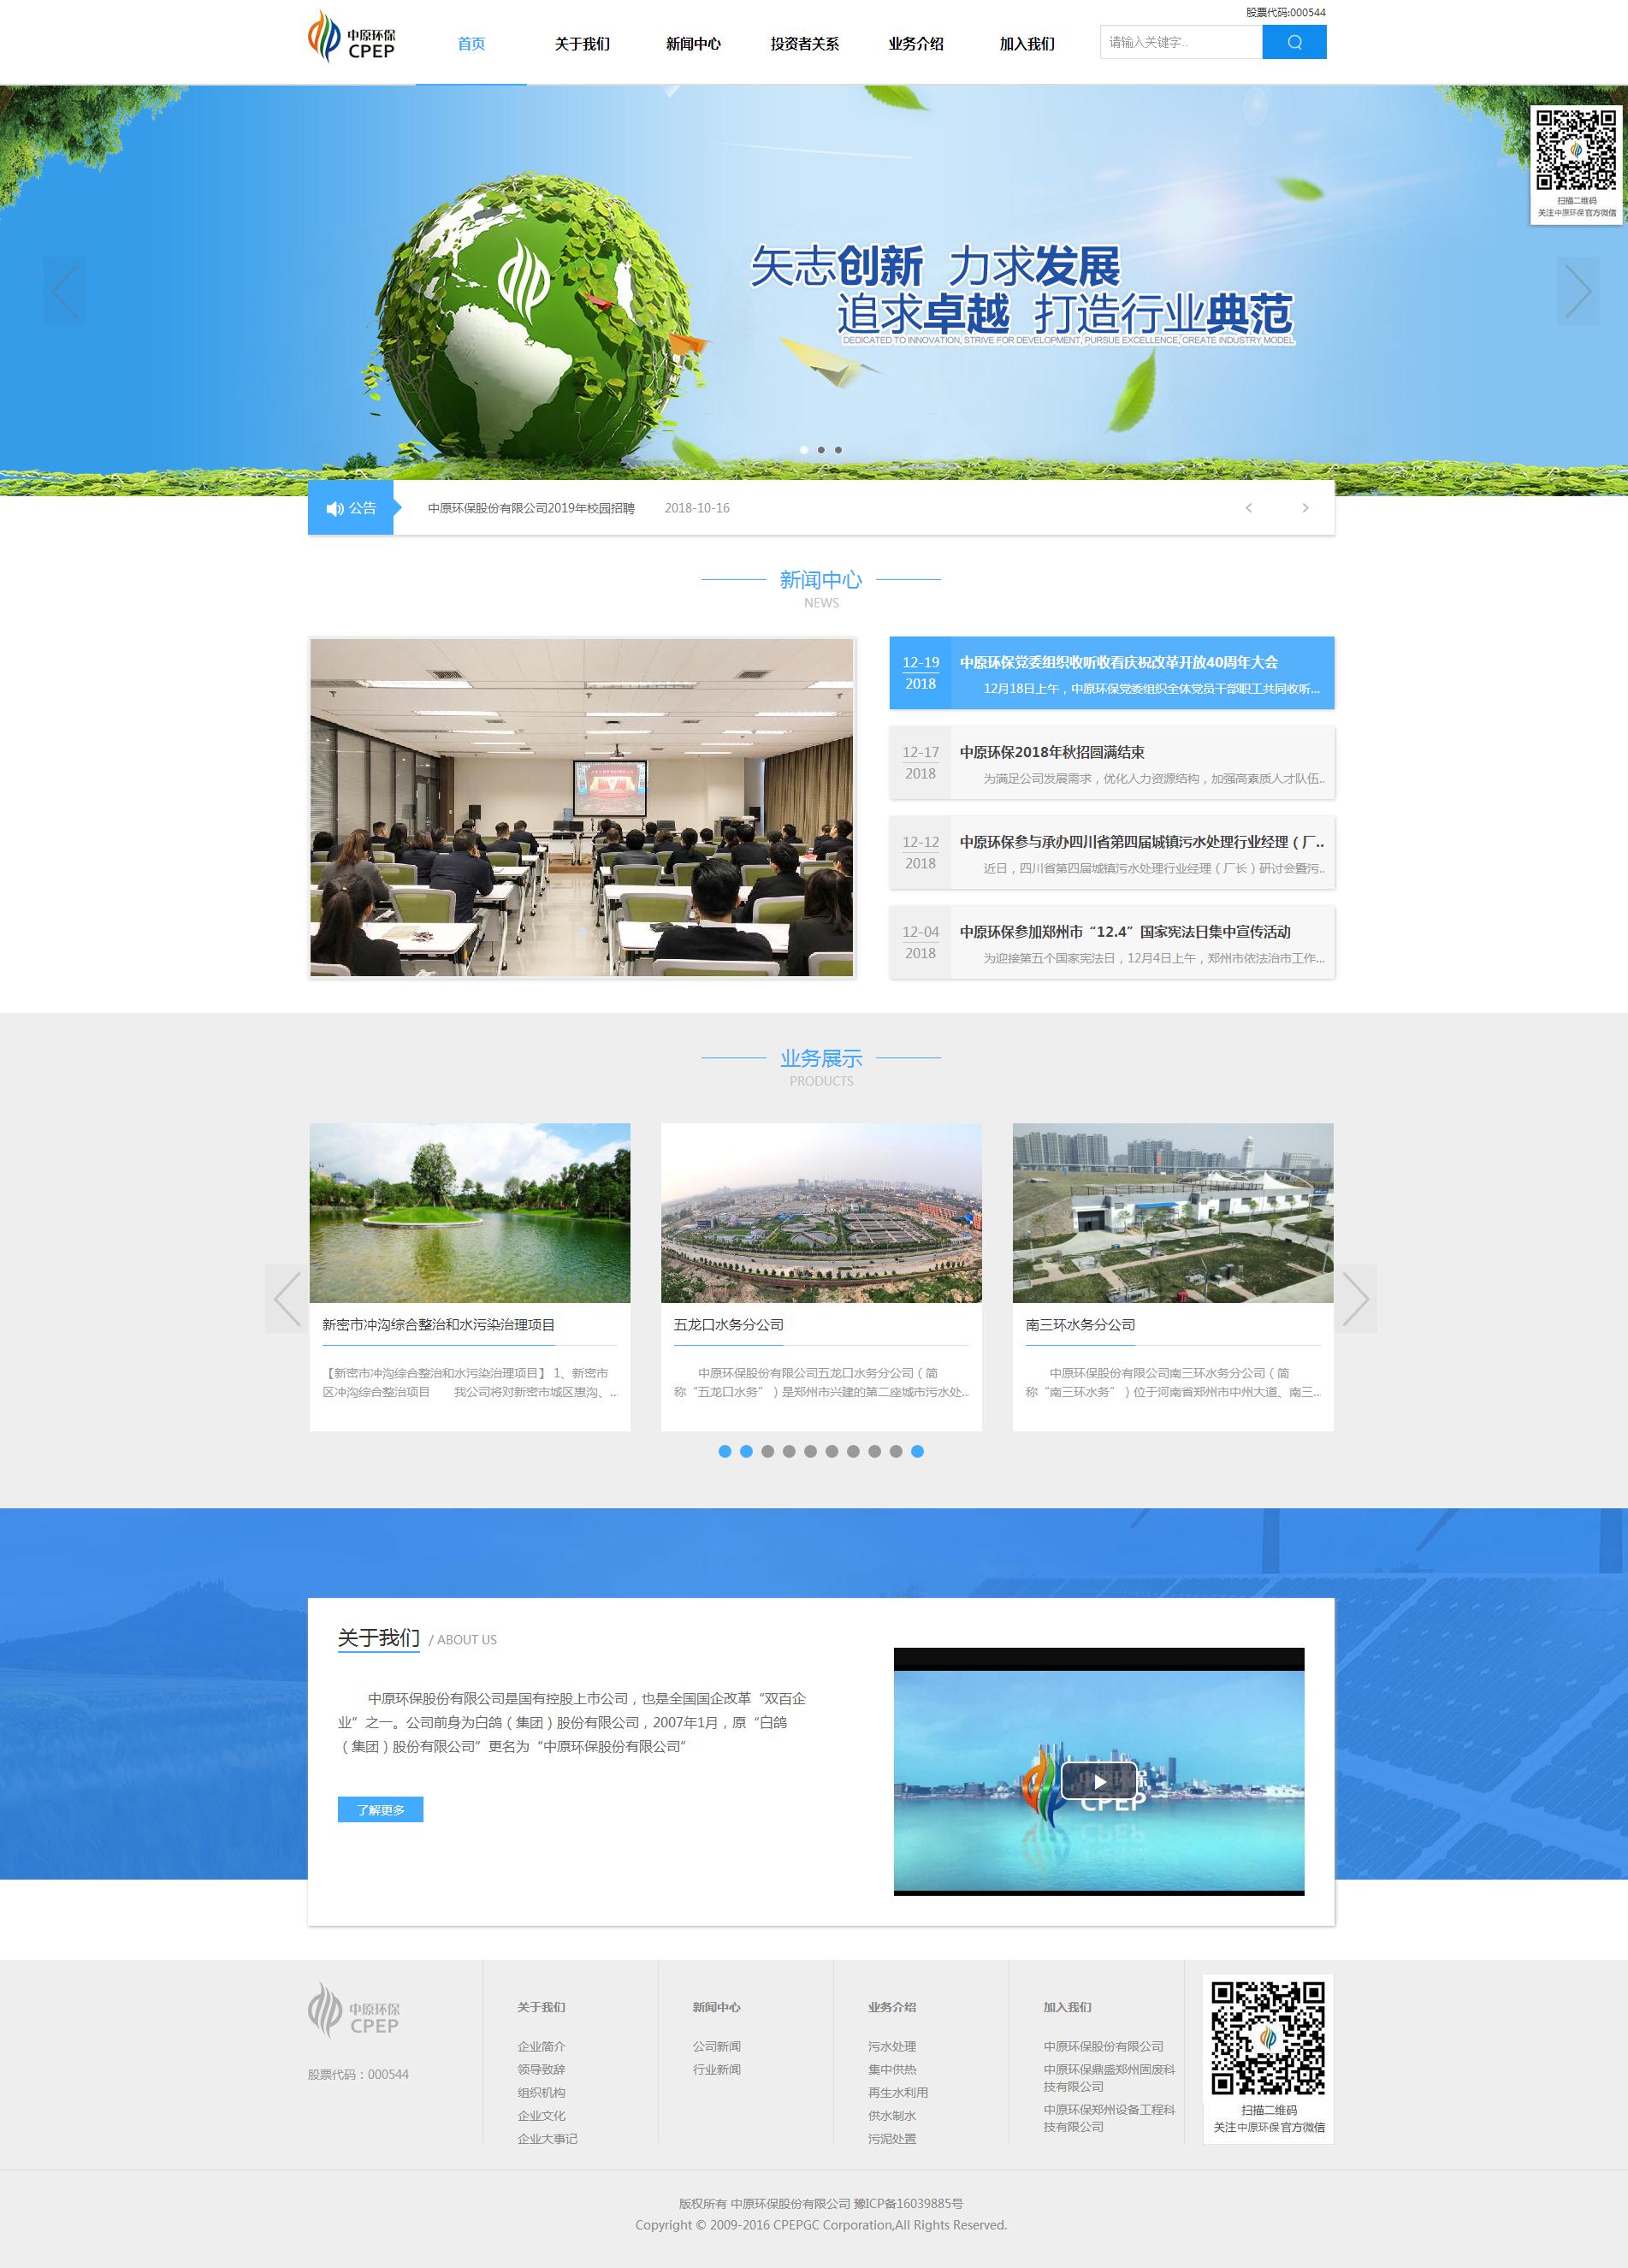 郑州网站建设案例之环保行业网站